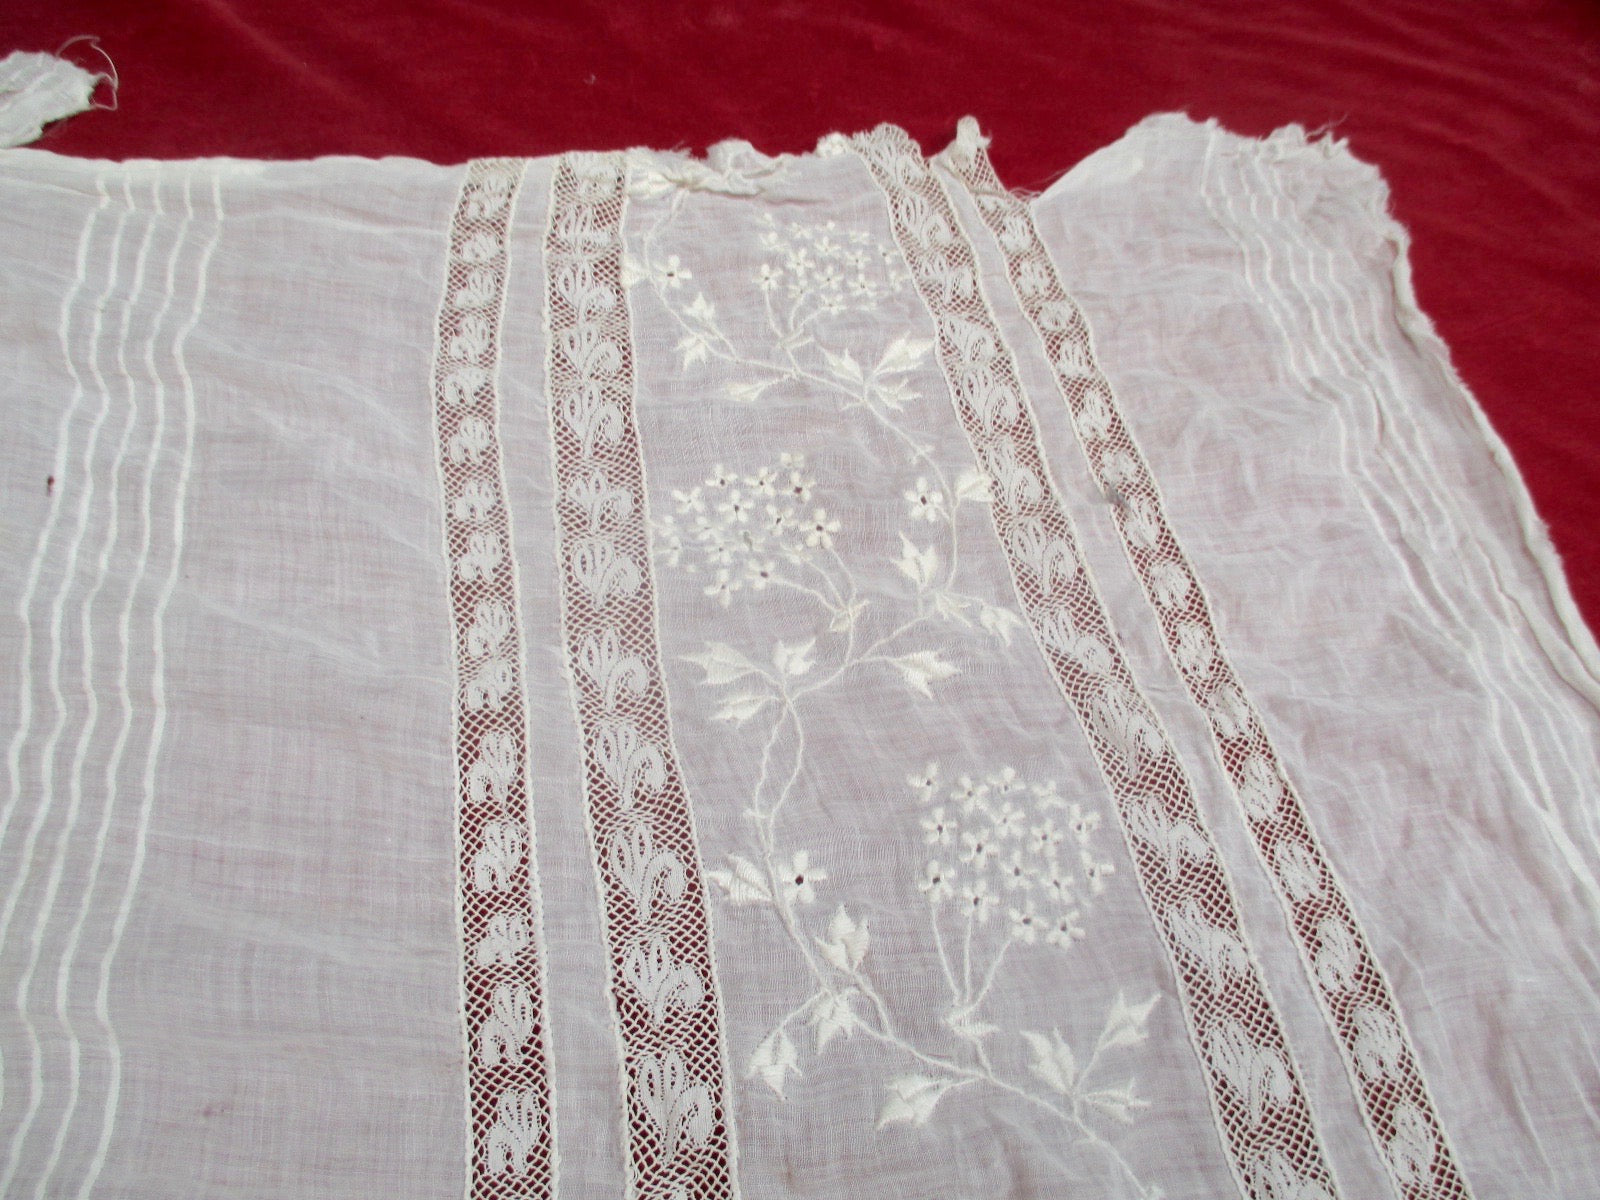 Antique Victorian Lace Petticoat Remnant